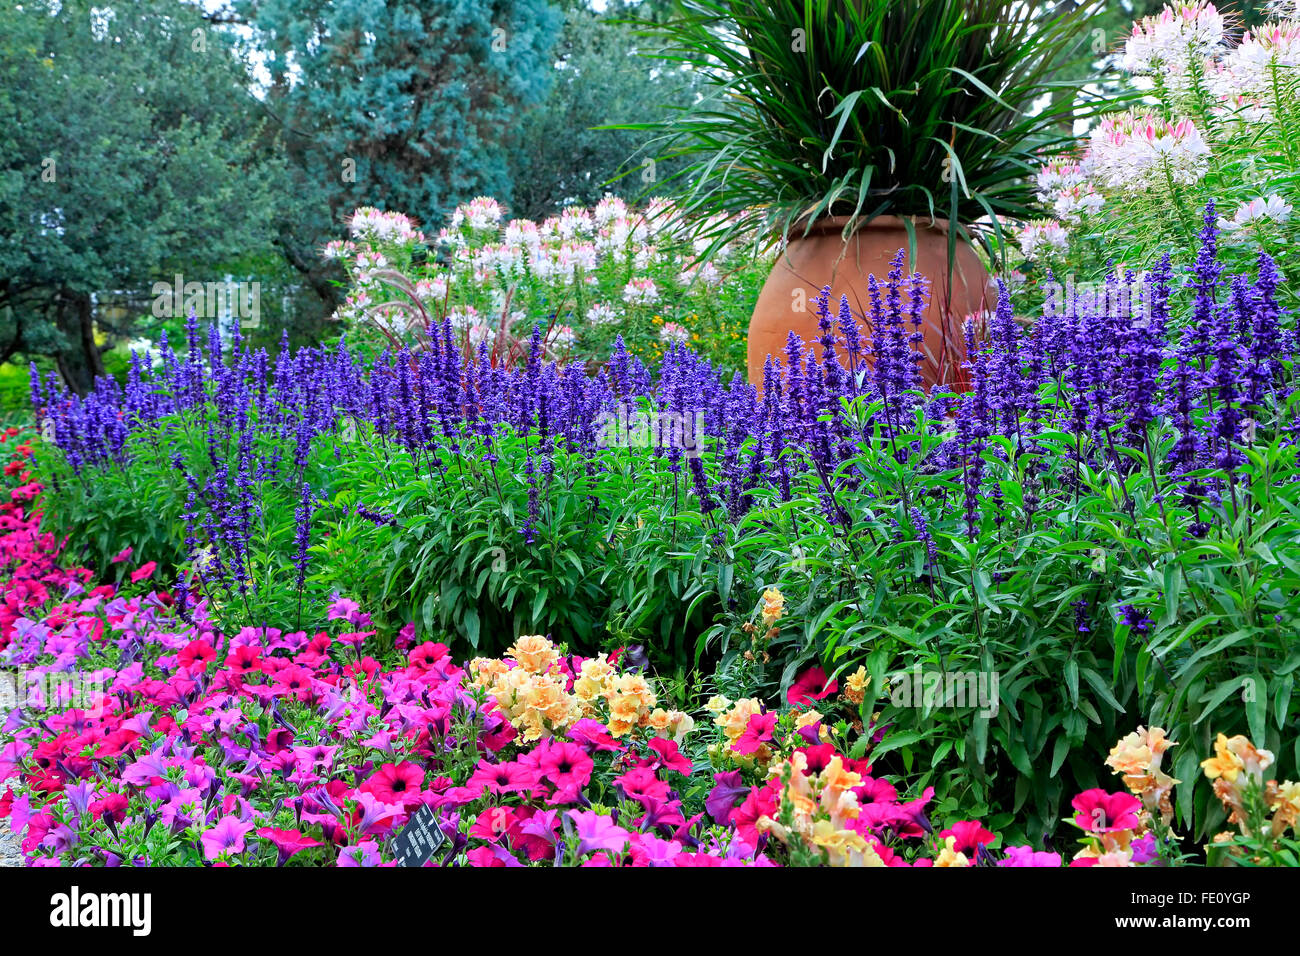 Flowers and ceramic pot, Denver Botanic Gardens, Denver, Colorado USA Stock Photo